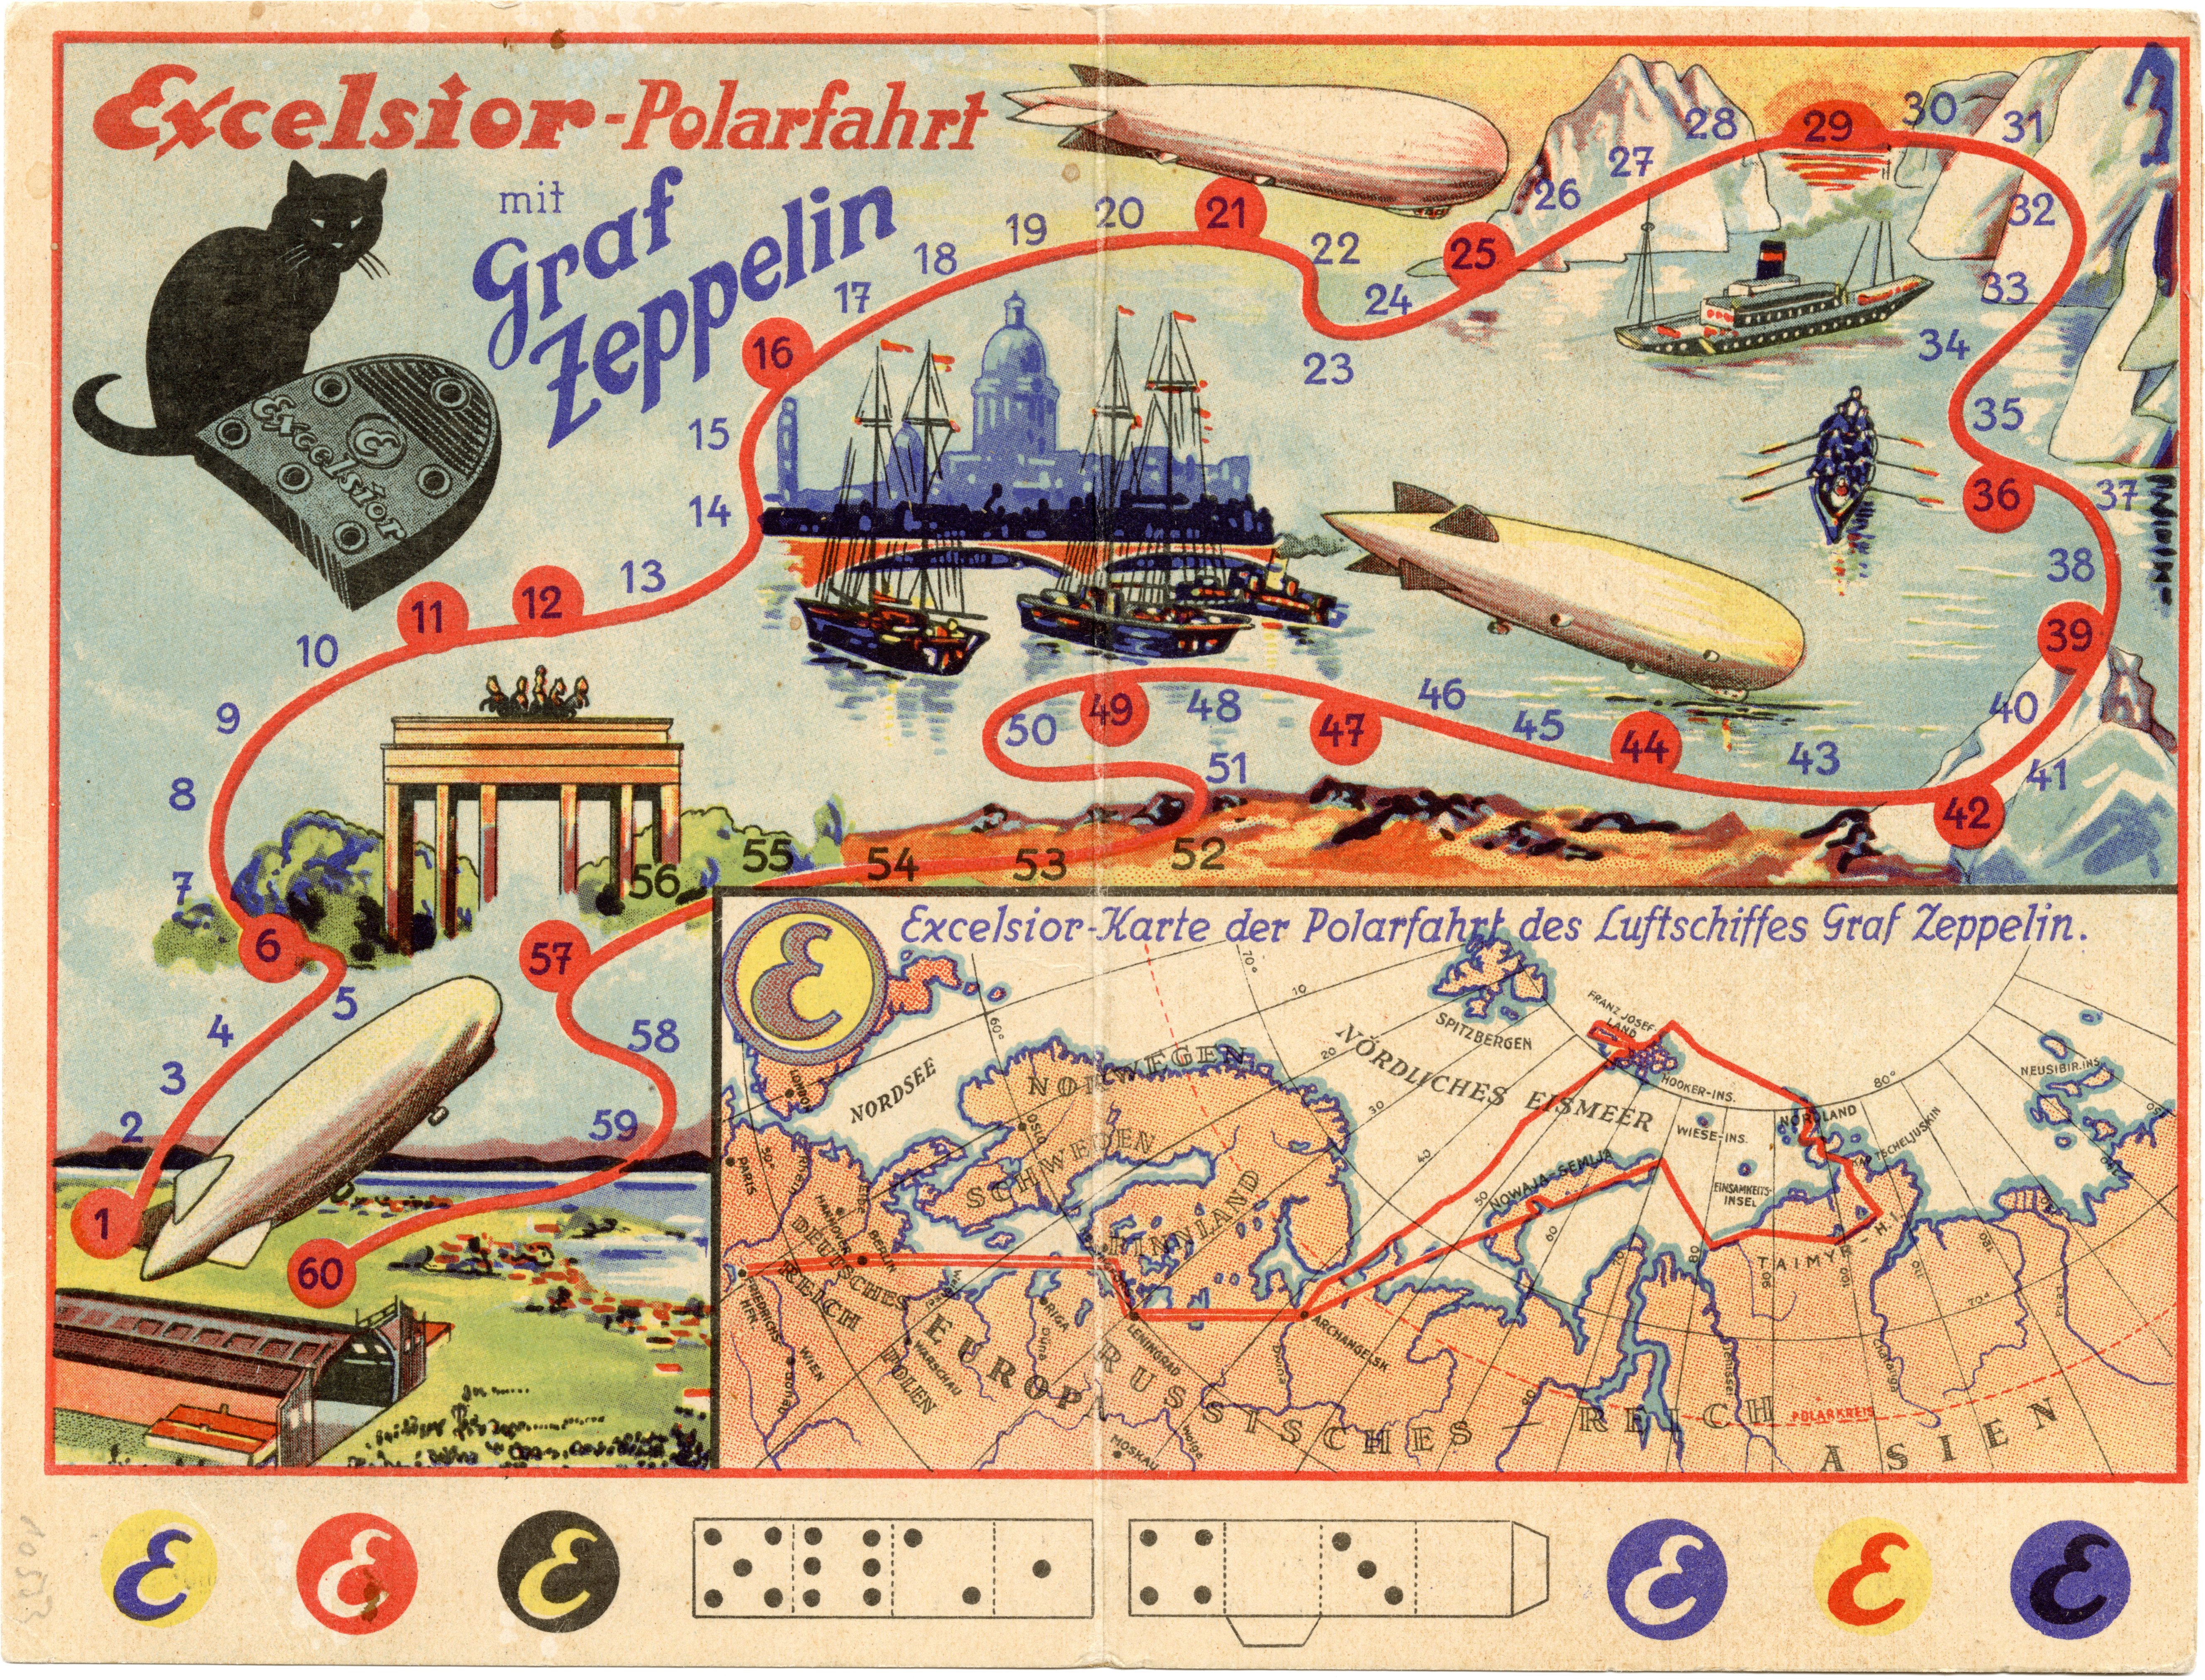 Würfelspiel: Excelsior-Polarfahrt mit Graf Zeppelin (Zeppelin Museum Friedrichshafen GmbH CC BY-NC-SA)